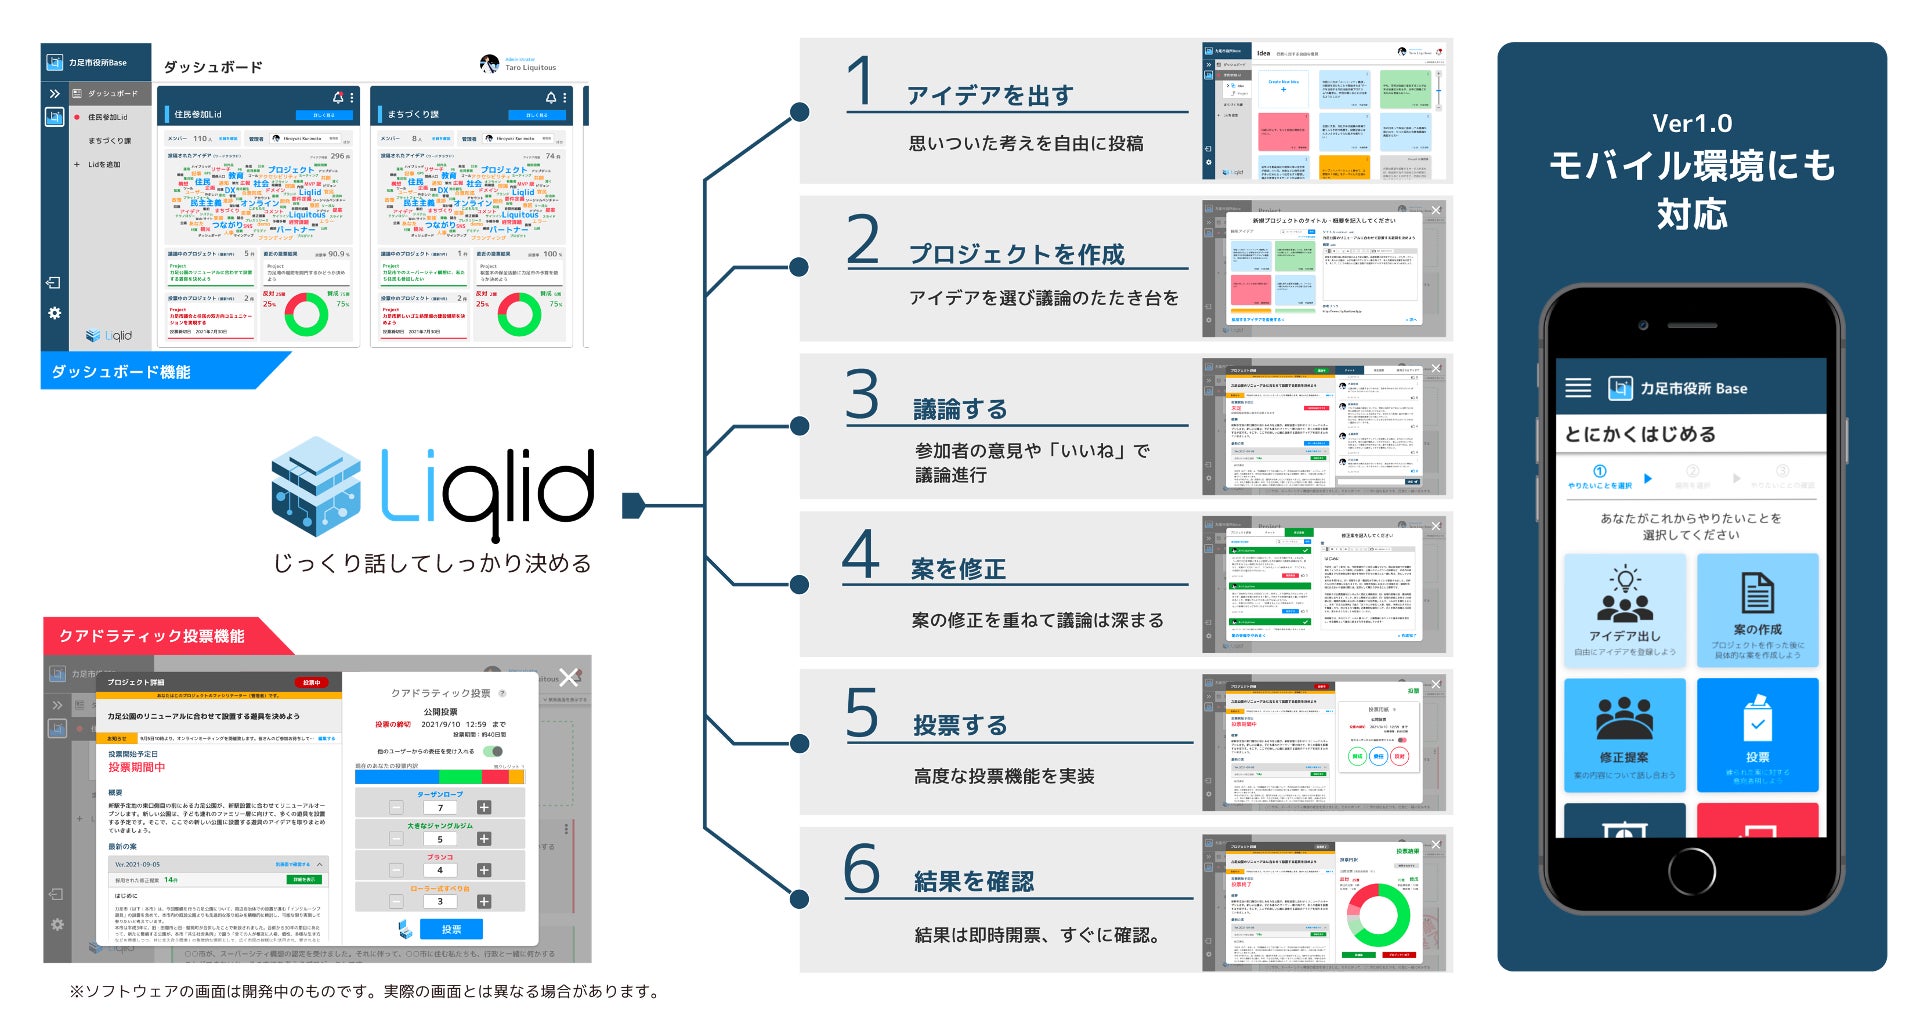 Liquitous、神奈川県南足柄市「第六次総合計画」の策定にあたり、独自開発の参加型合意形成プラットフォーム「Liqlid」を提供のサブ画像2